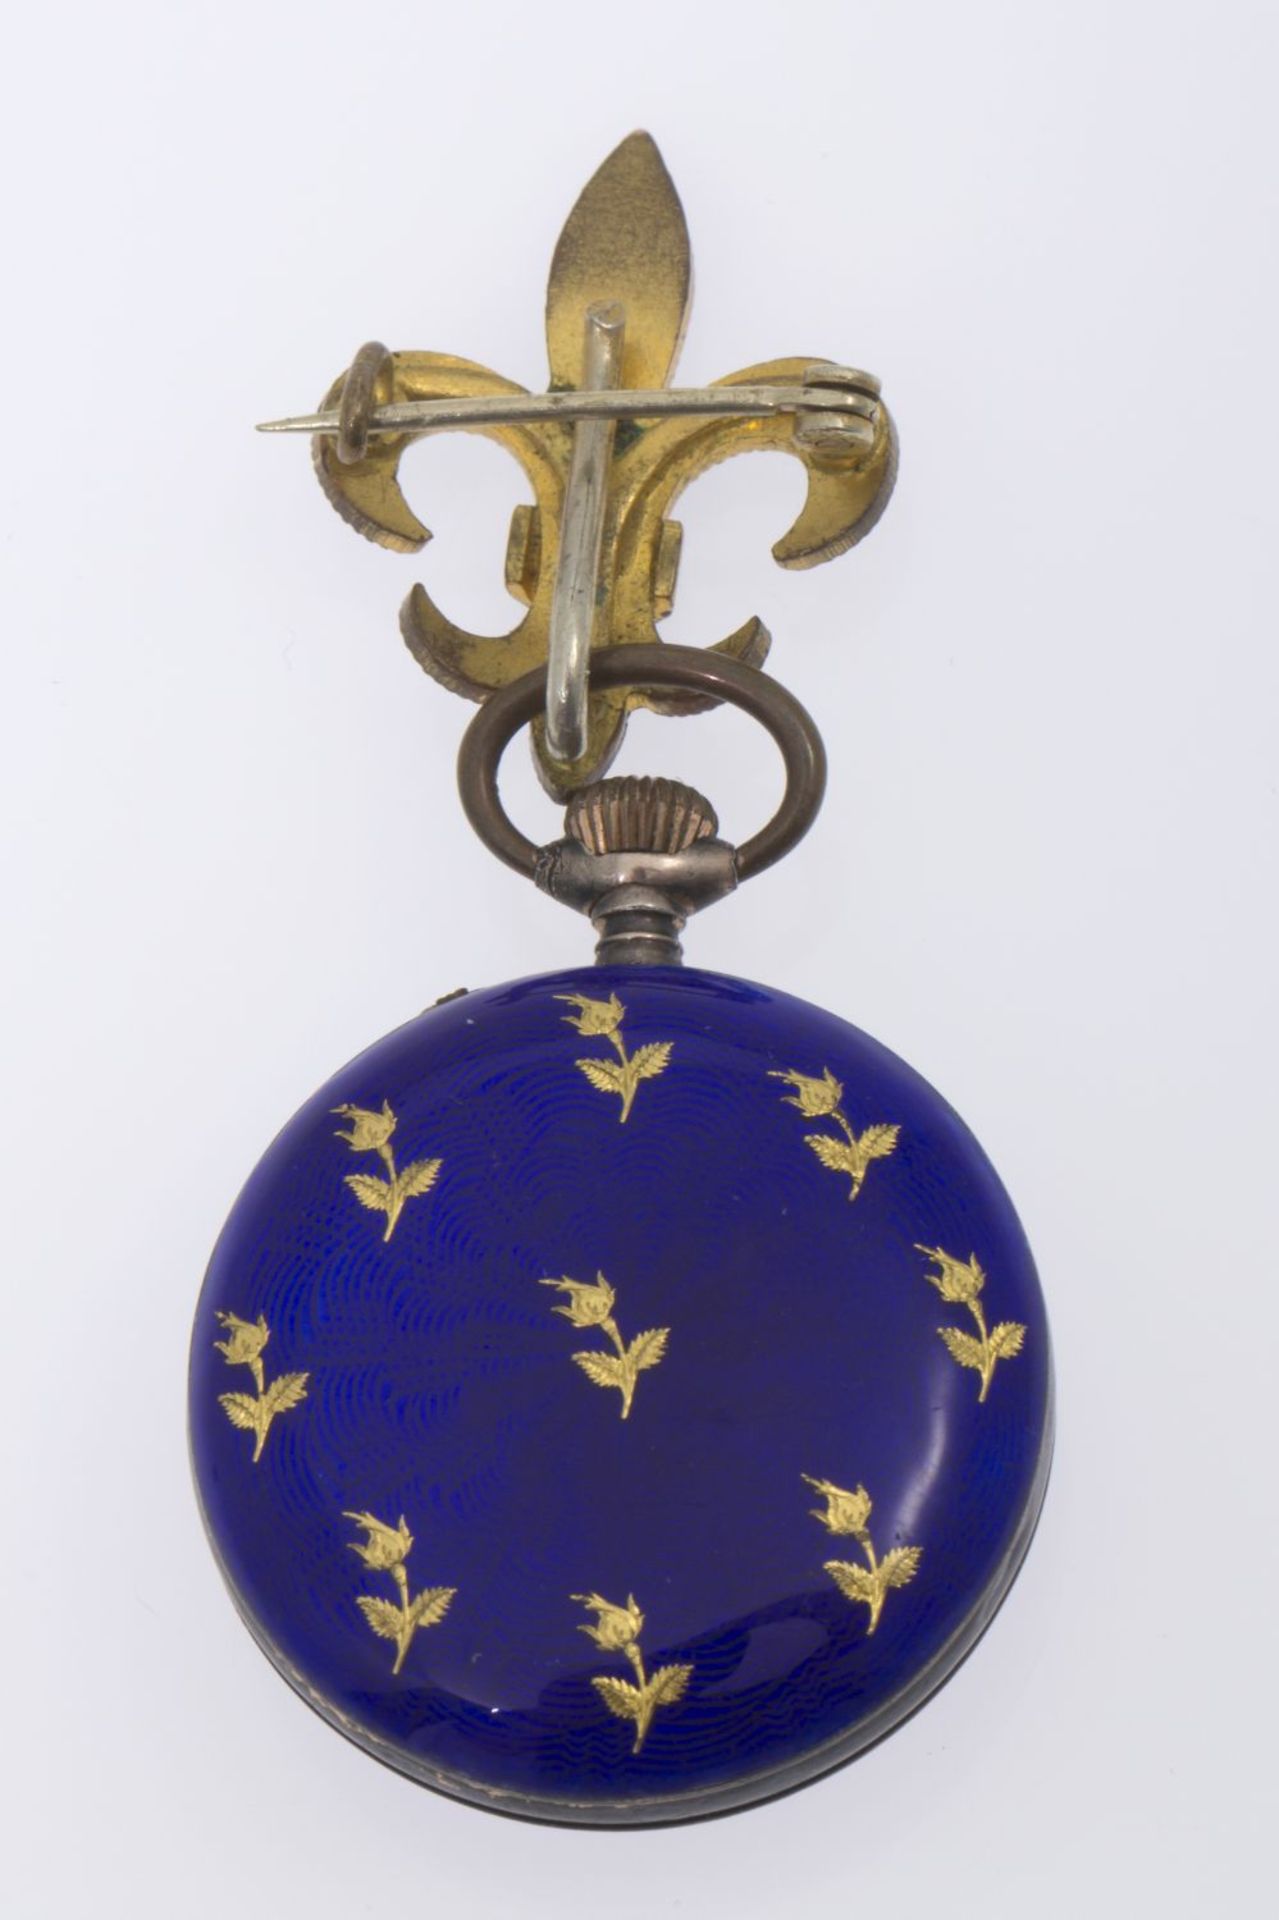 Damentaschenuhr an LilienbroscheGehäuse aus Silber 800, vergoldet bzw. goldfarbenes Metall. - Bild 2 aus 2